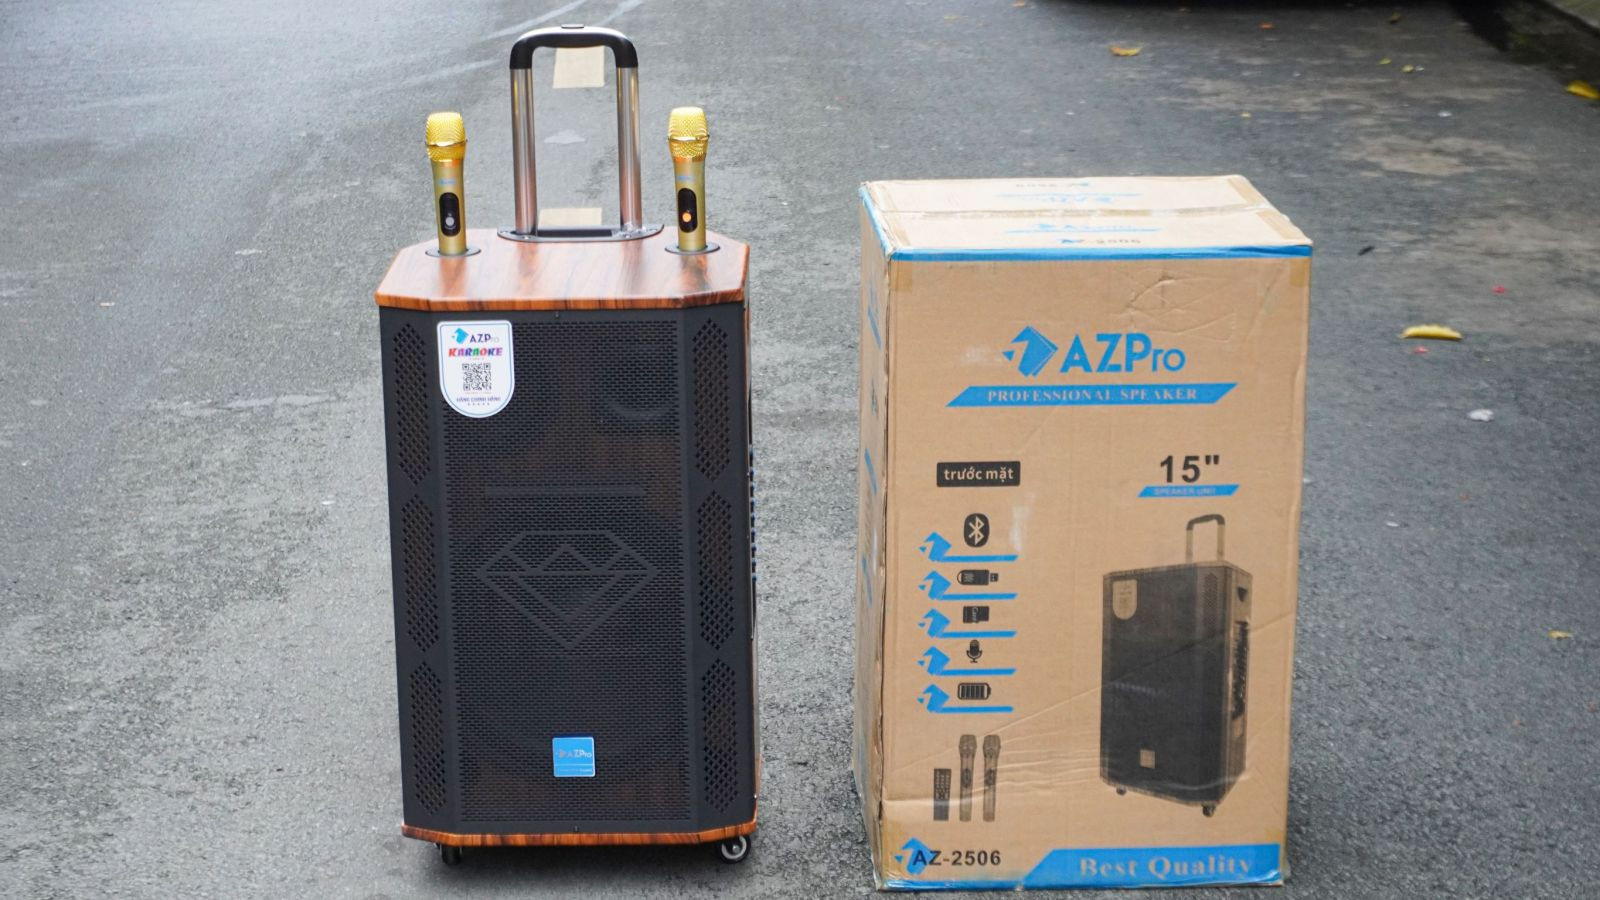 Loa kéo AZPro AZ-2506 - Loa kéo di động 3 đường tiếng bass 4 tấc - Tặng kèm 2 micro không dây - Chống hú tốt, Công suất cực lớn lên đến 1300W - Đầy đủ kết nối Bluetooth, AV, USB, SD card - Cổng 6.5 cắm micro ngoài - Âm thanh cực chuẩn